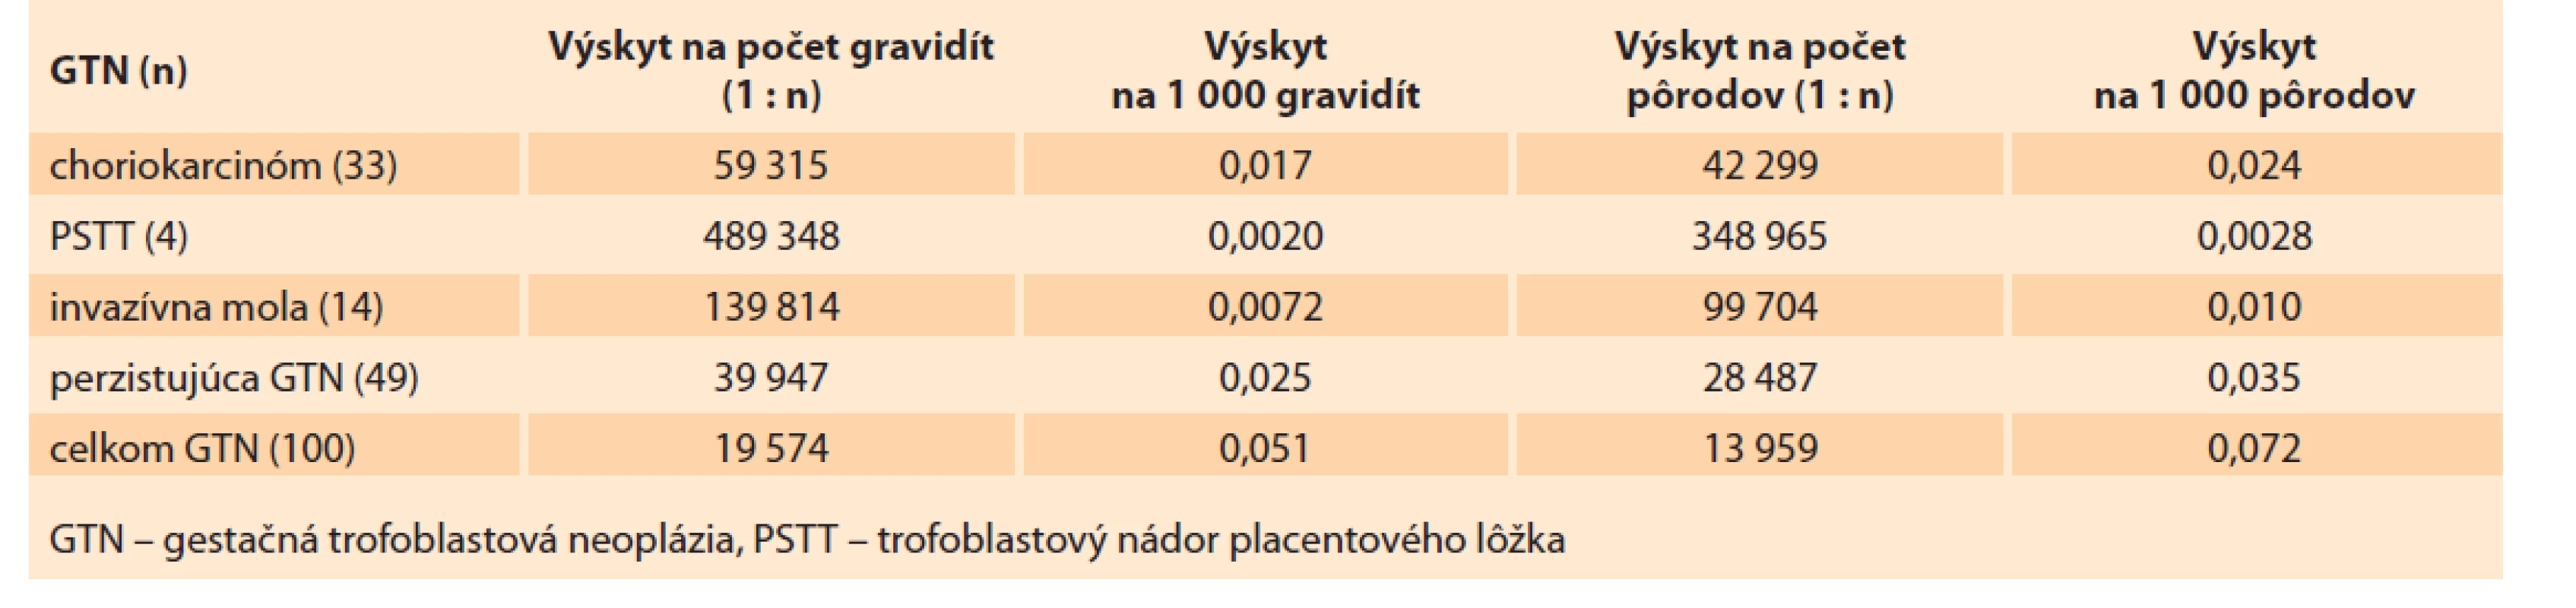 Incidencia gestačnej trofoblastovej neoplázie v Slovenskej republike v rokoch 1993–2017.<br>
Tab. 7. Incidence of gestational trophoblastic neoplasia in the Slovak Republic in 1993–2017.